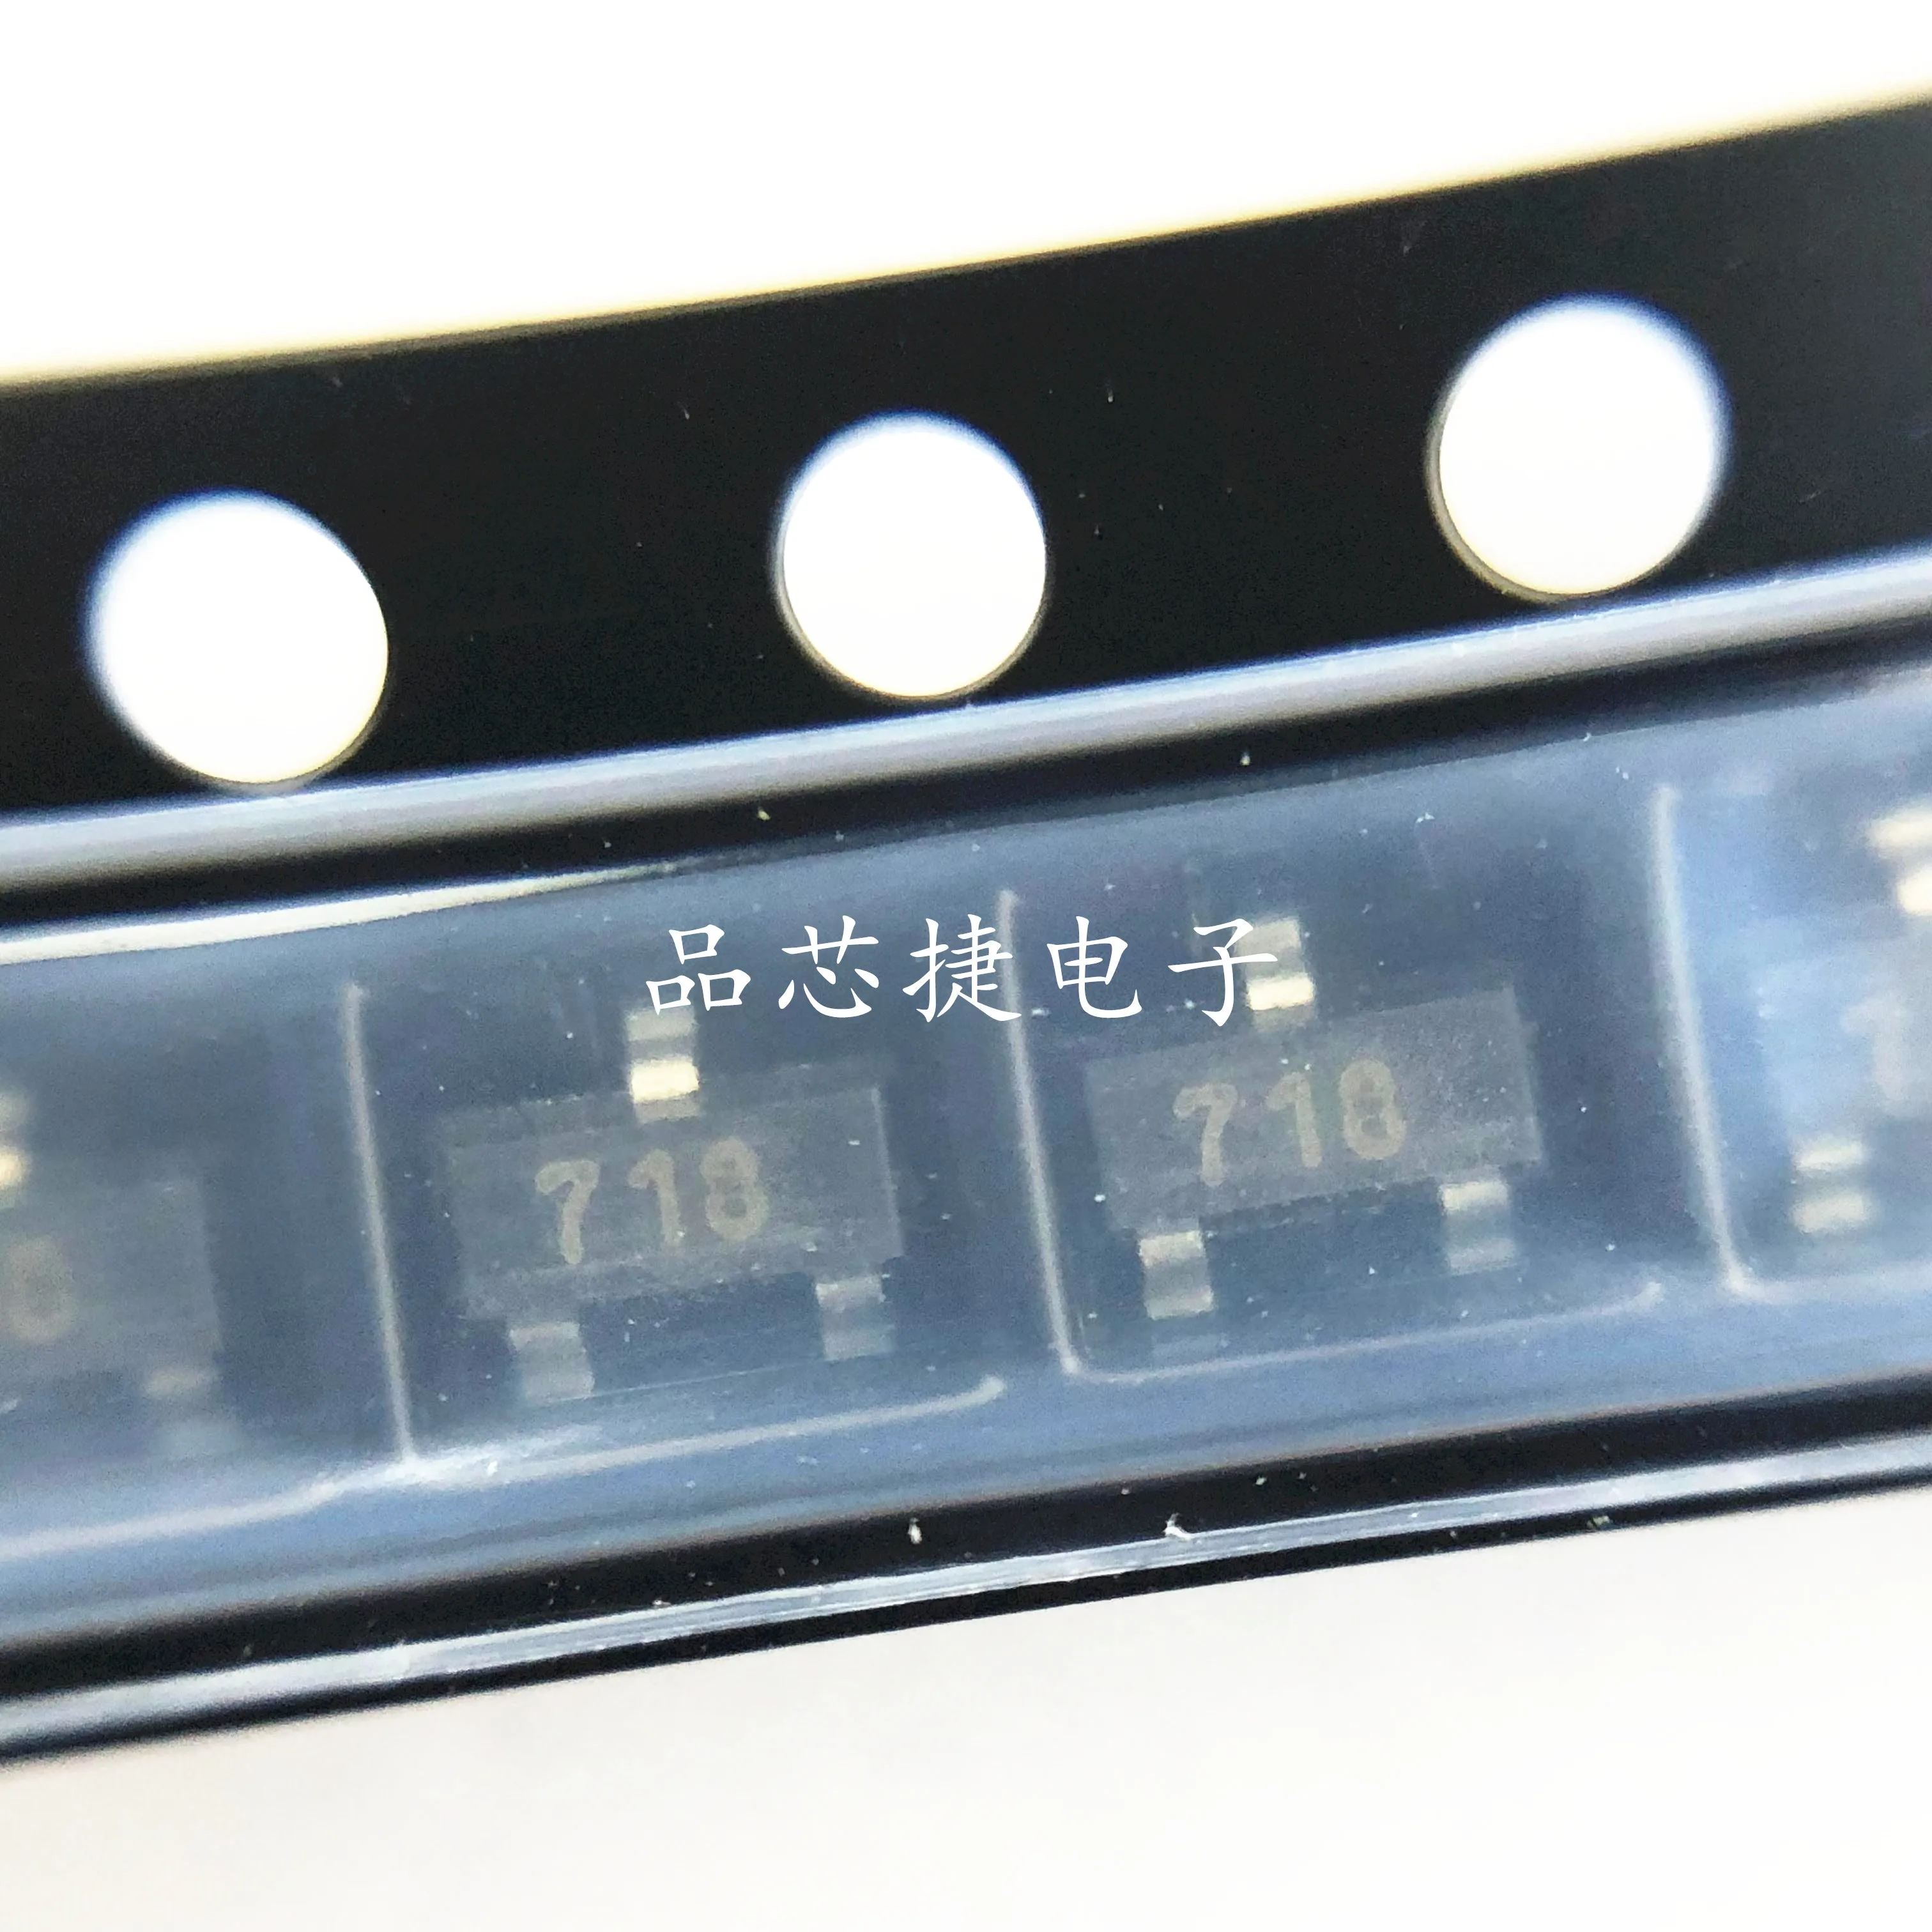 

10 шт. Оригинальный Новый Шелковый экран FMMT718TA 718 SOT23 1.5A 20V транзисторный Триод